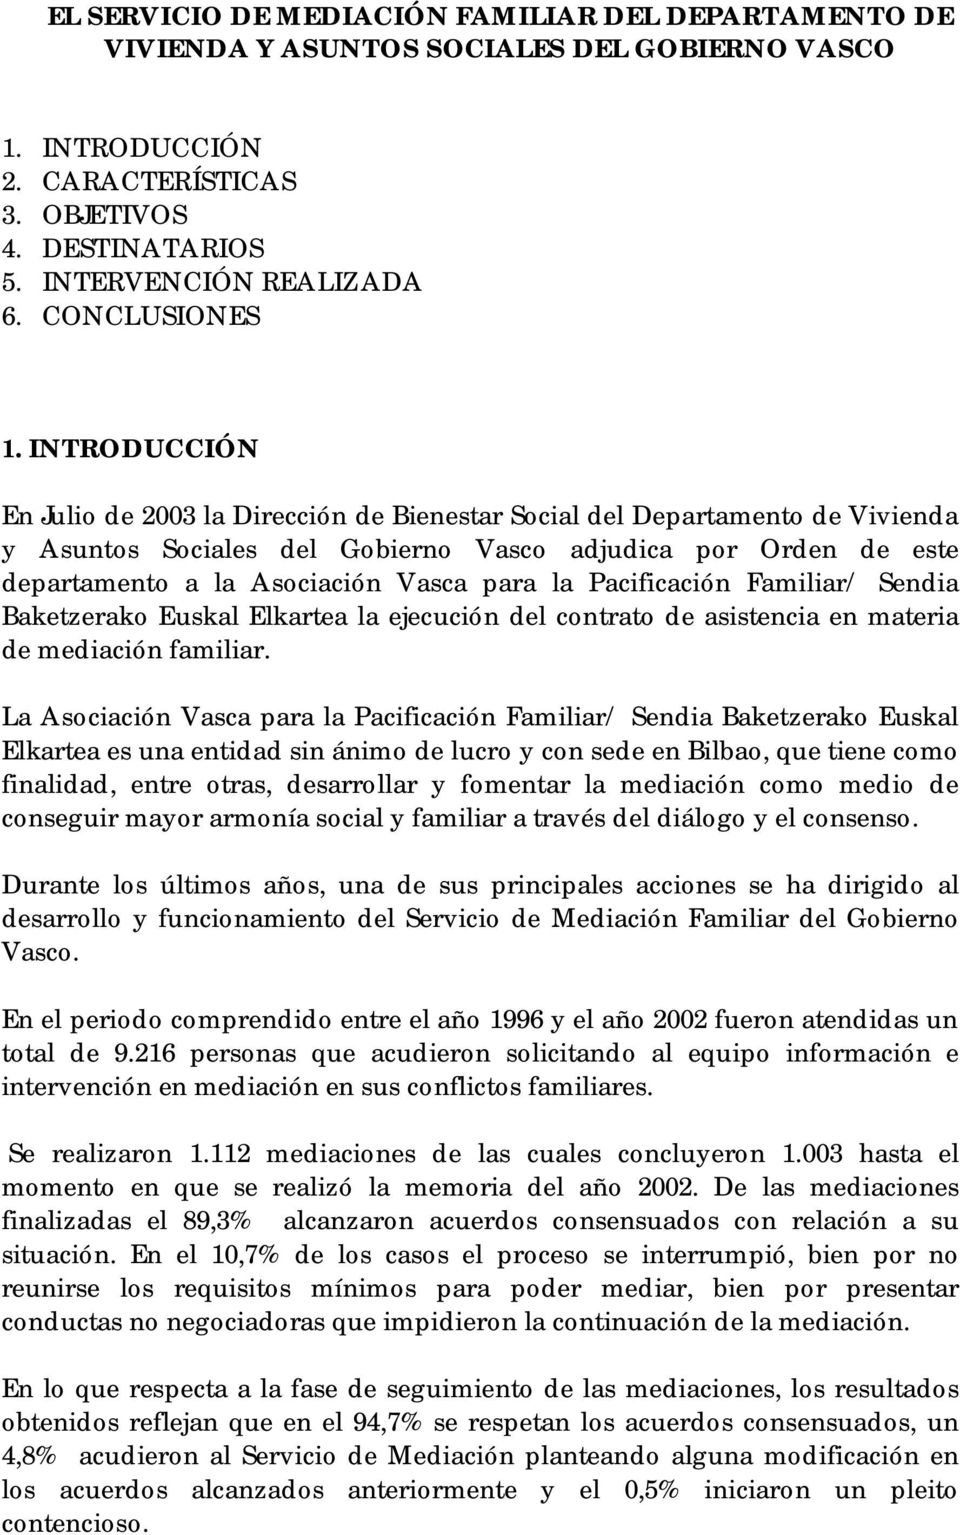 INTRODUCCIÓN En Julio de 2003 la Dirección de Bienestar Social del Departamento de Vivienda y Asuntos Sociales del Gobierno Vasco adjudica por Orden de este departamento a la Asociación Vasca para la